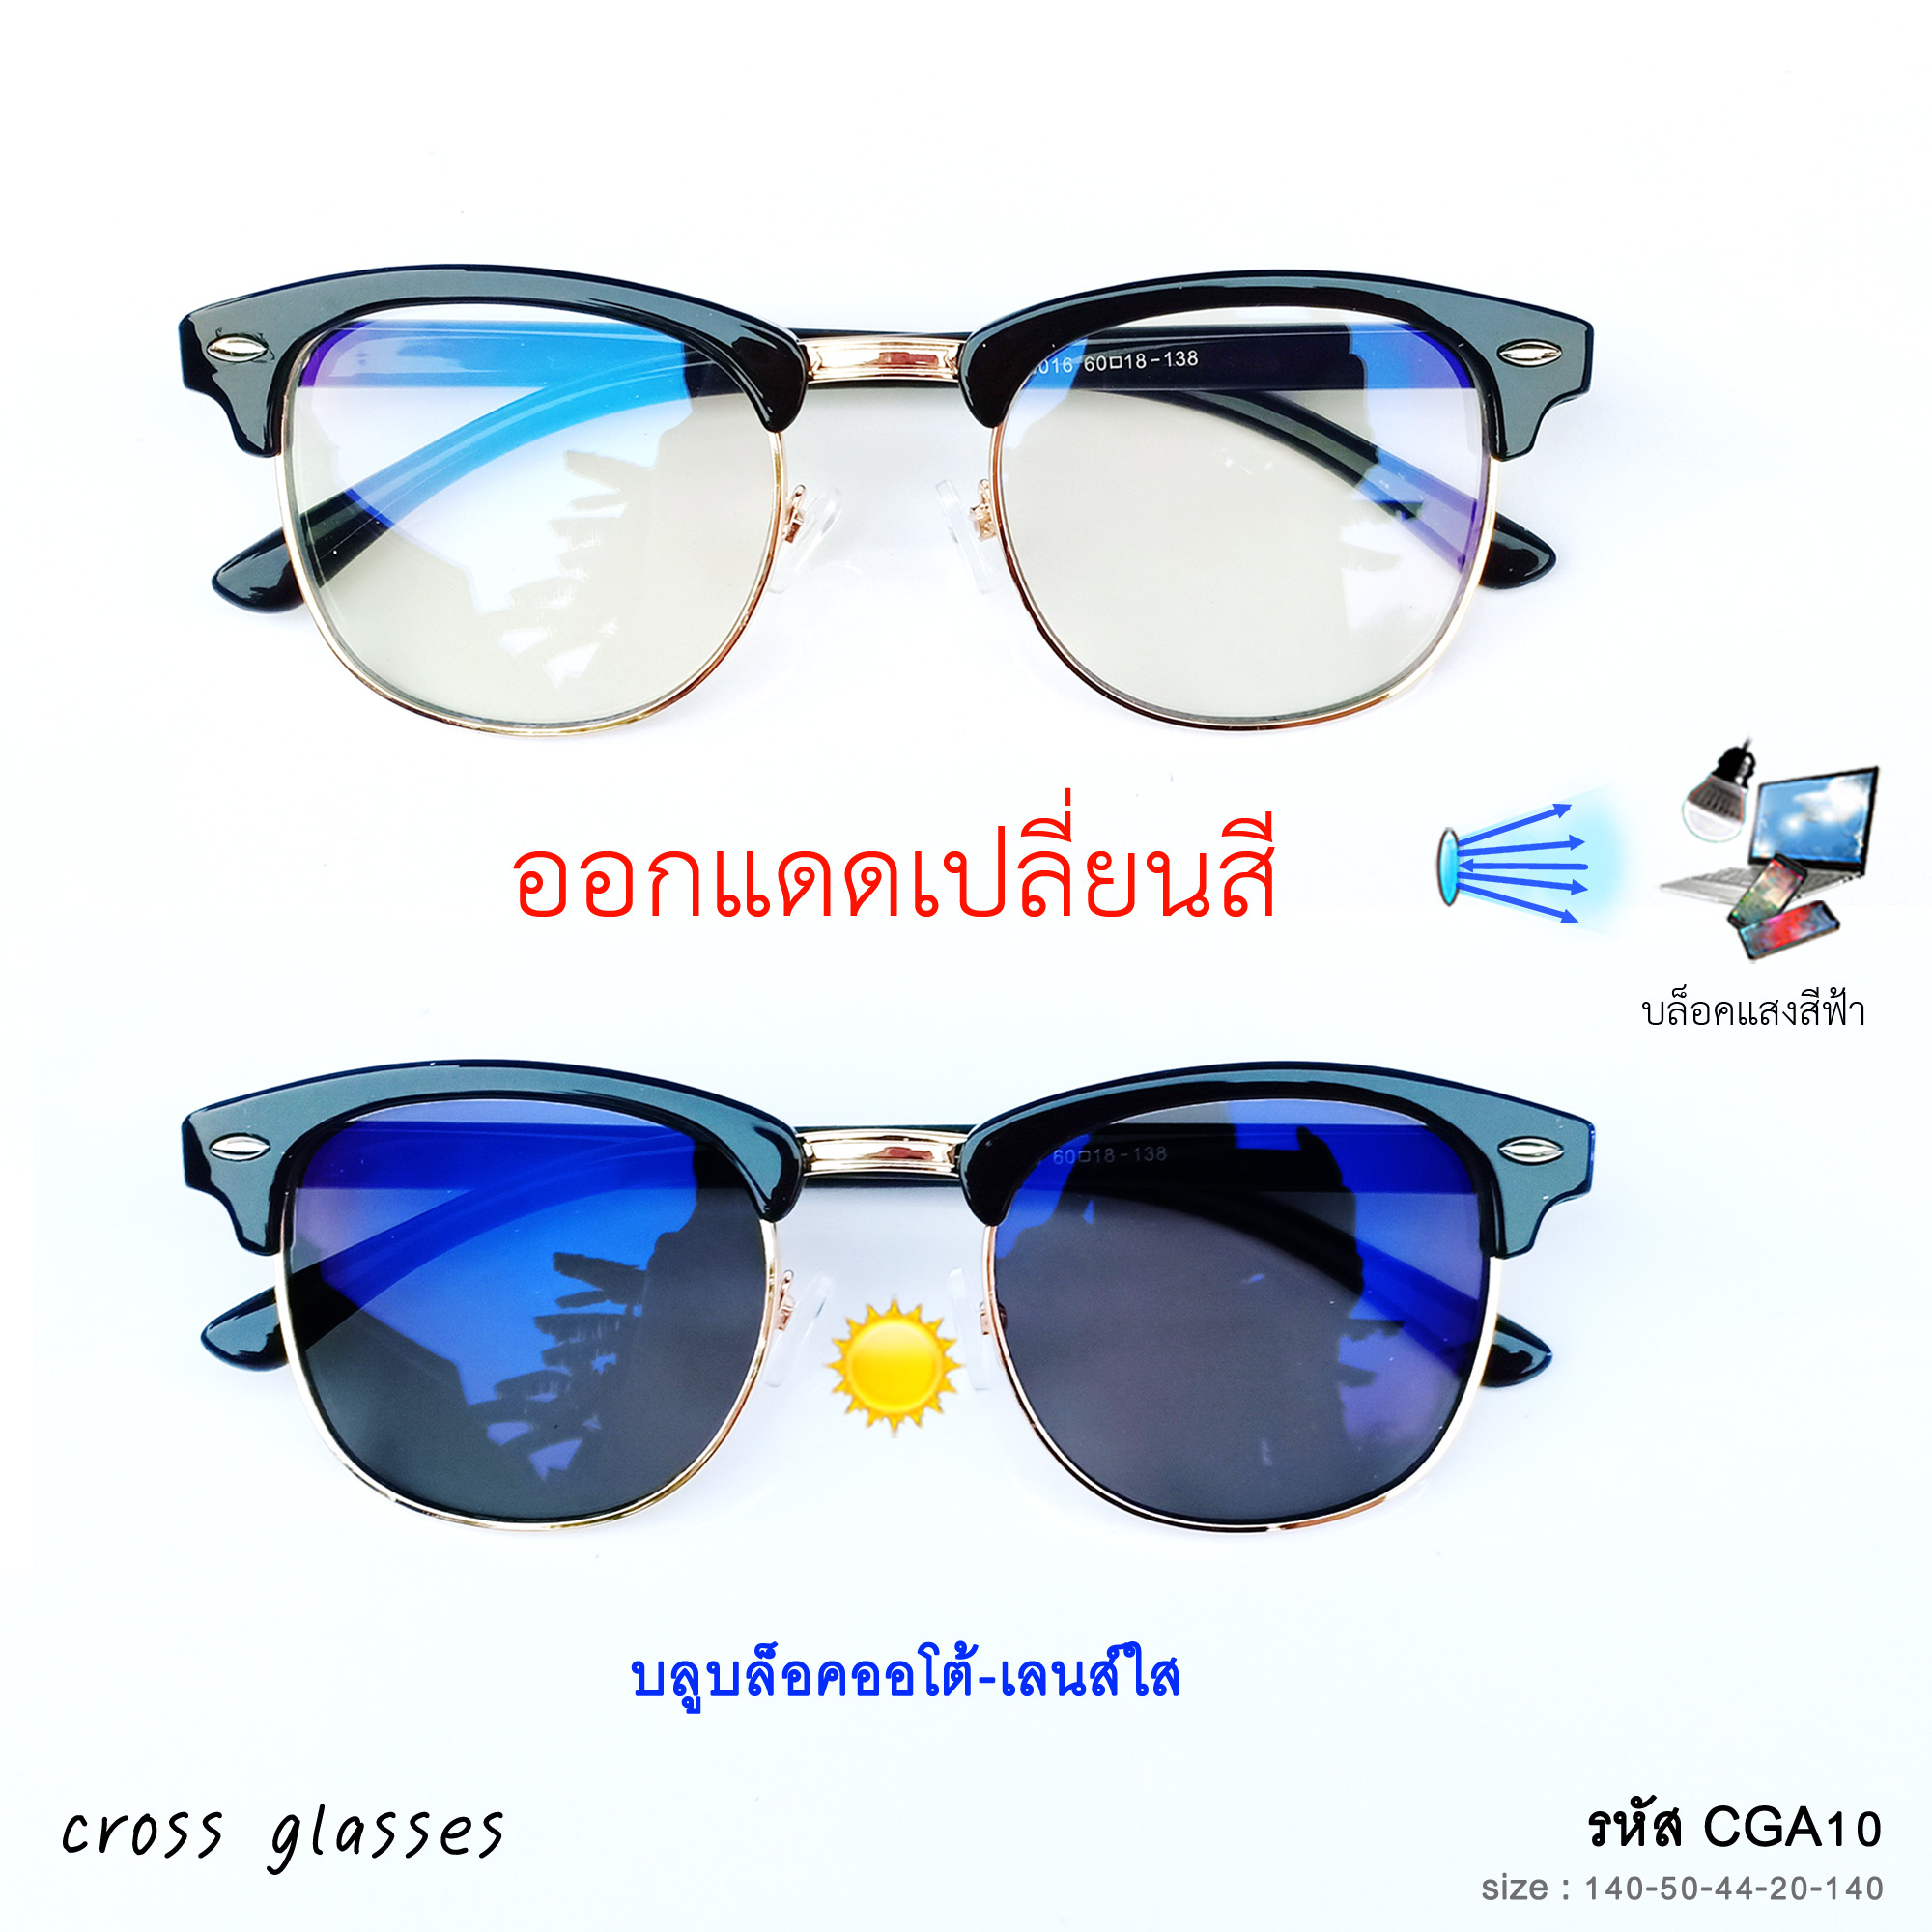 แว่นกรองแสงสีฟ้า เลนส์บลูบล็อคออโต้ ออกแดดเปลี่ยนสี  CGA54 ทรง clubmaster แถมฟรีกล่องแว่นพกพา+ผ้าเช็ดเลนส์